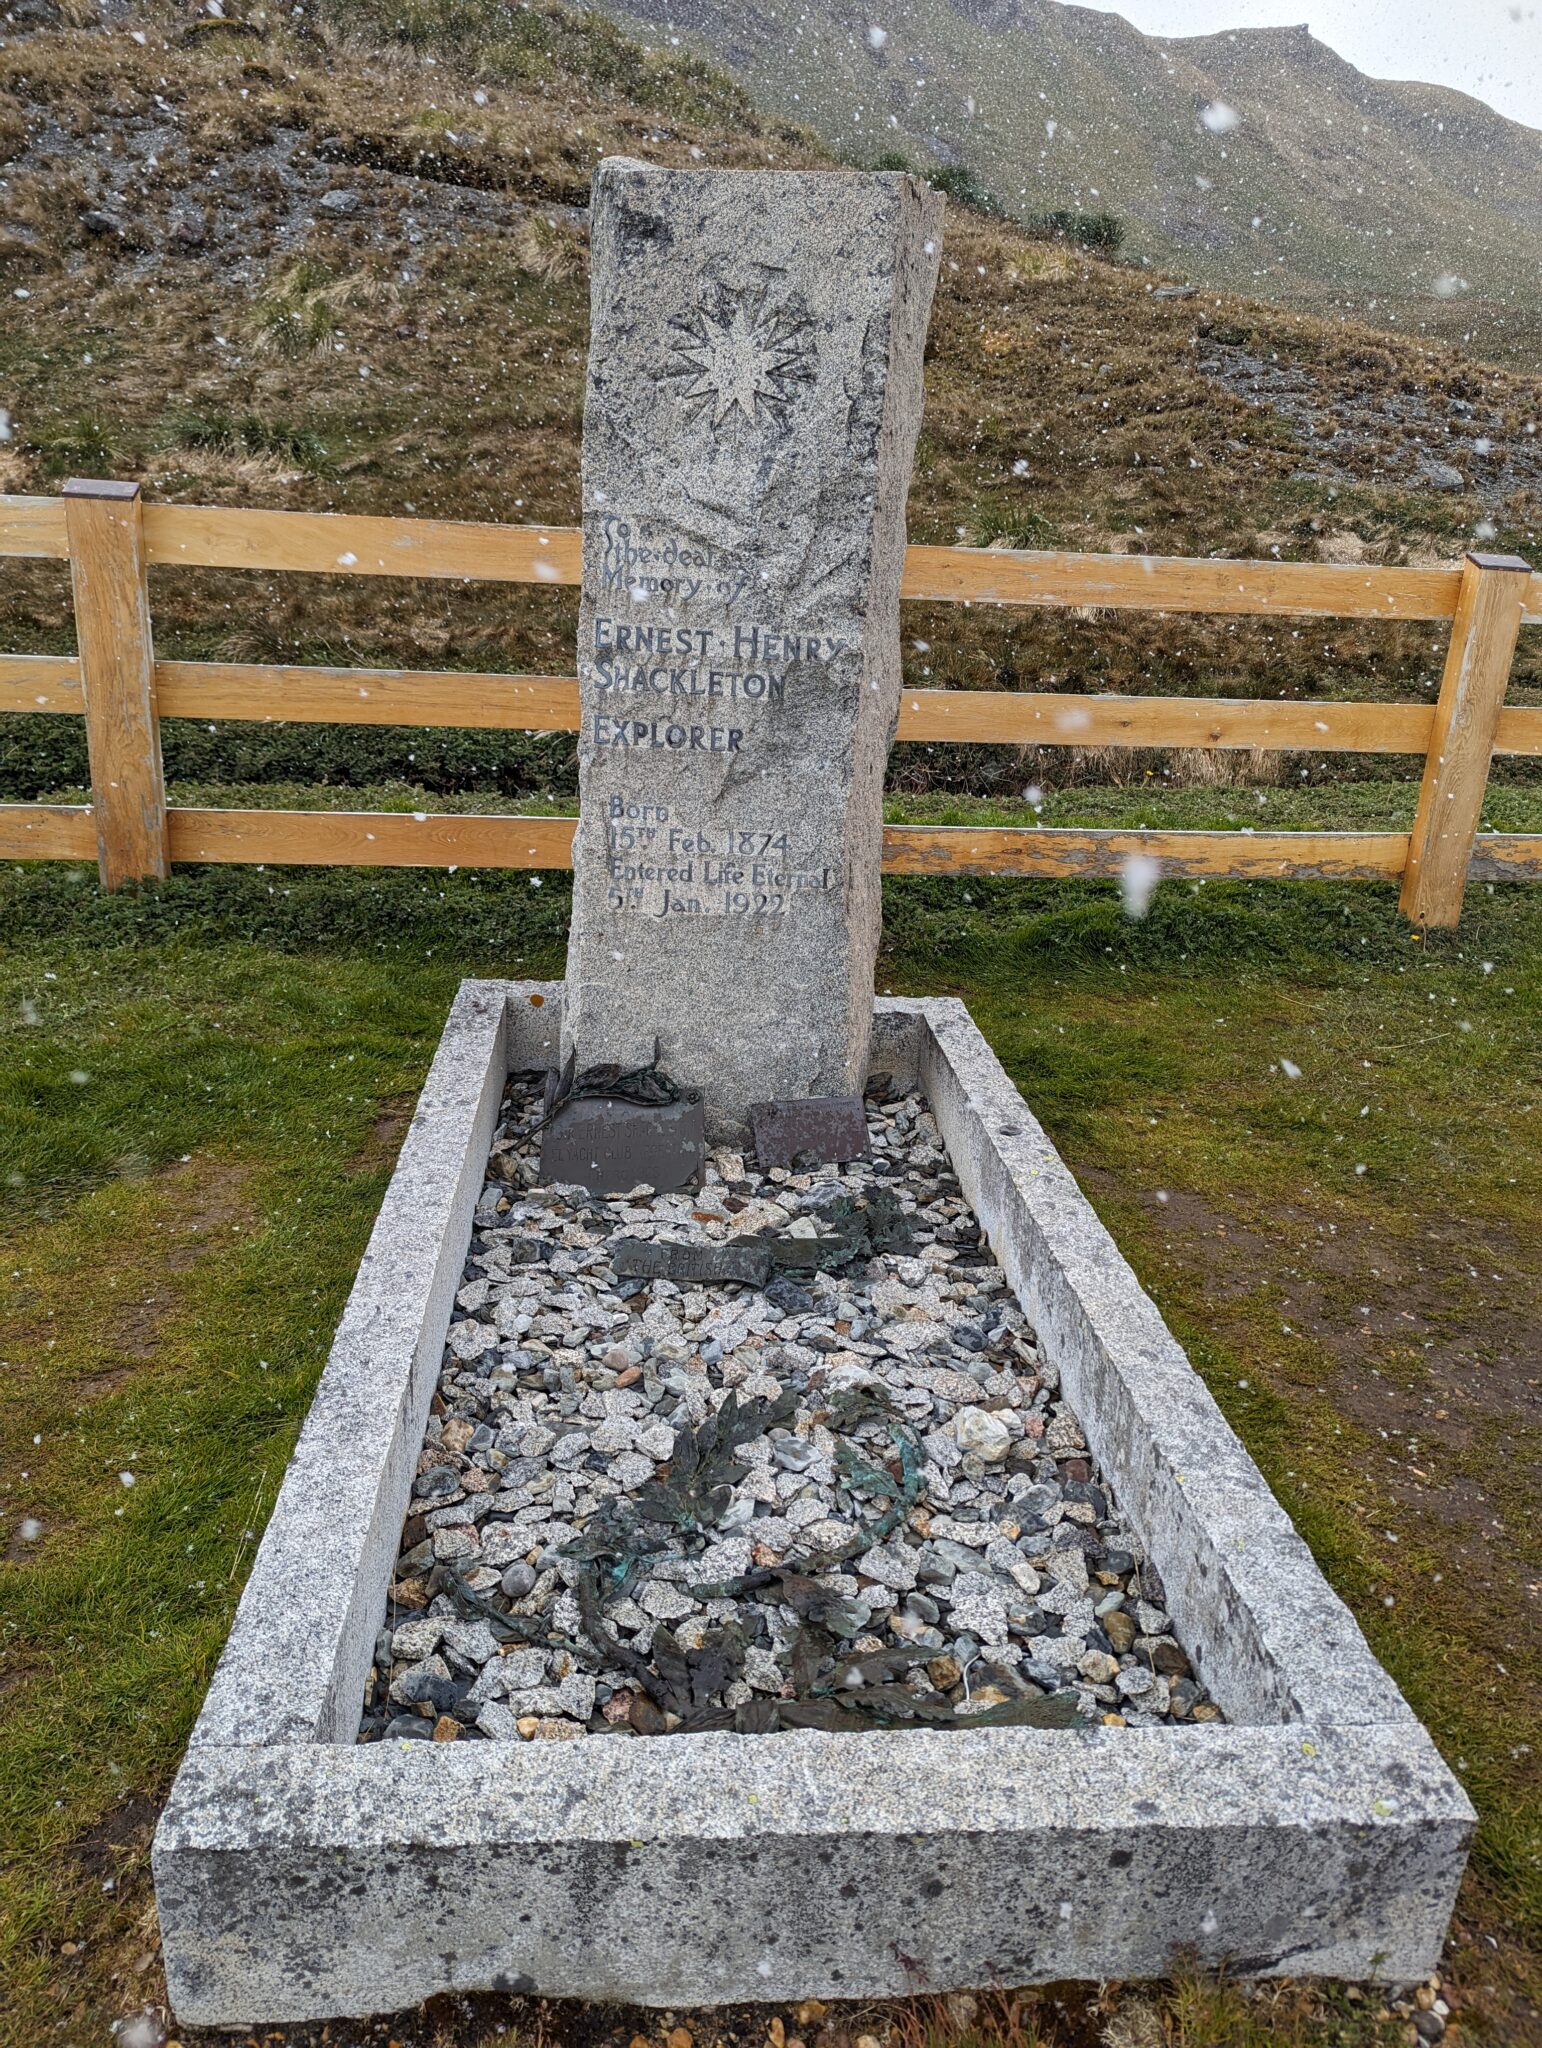 South Georgia grave